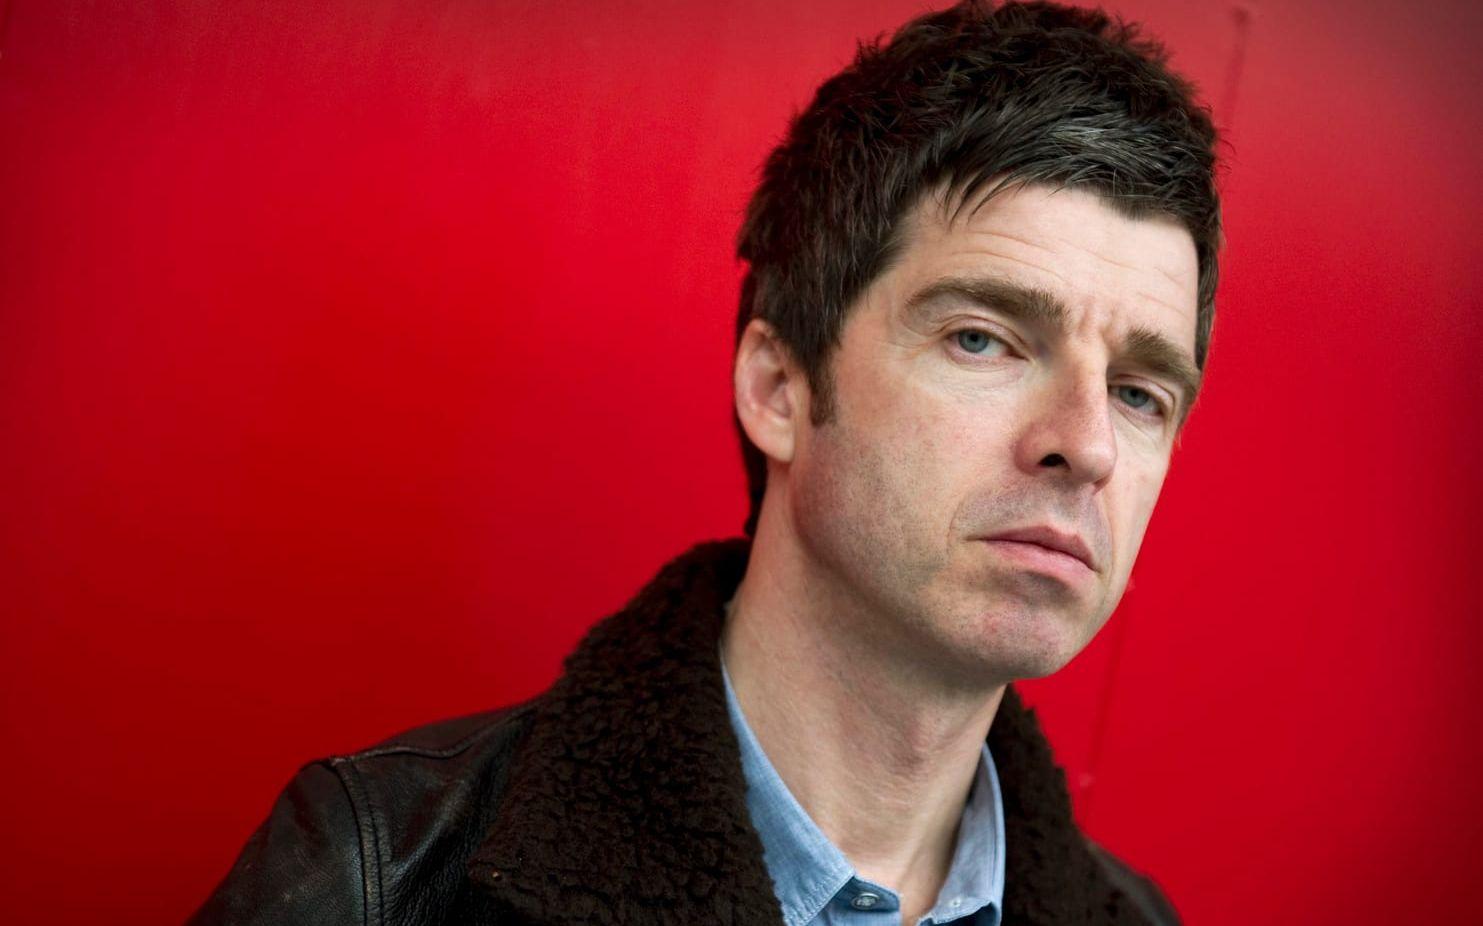 Men av Noel Gallagher syntes inte ett spår. Bild: TT.